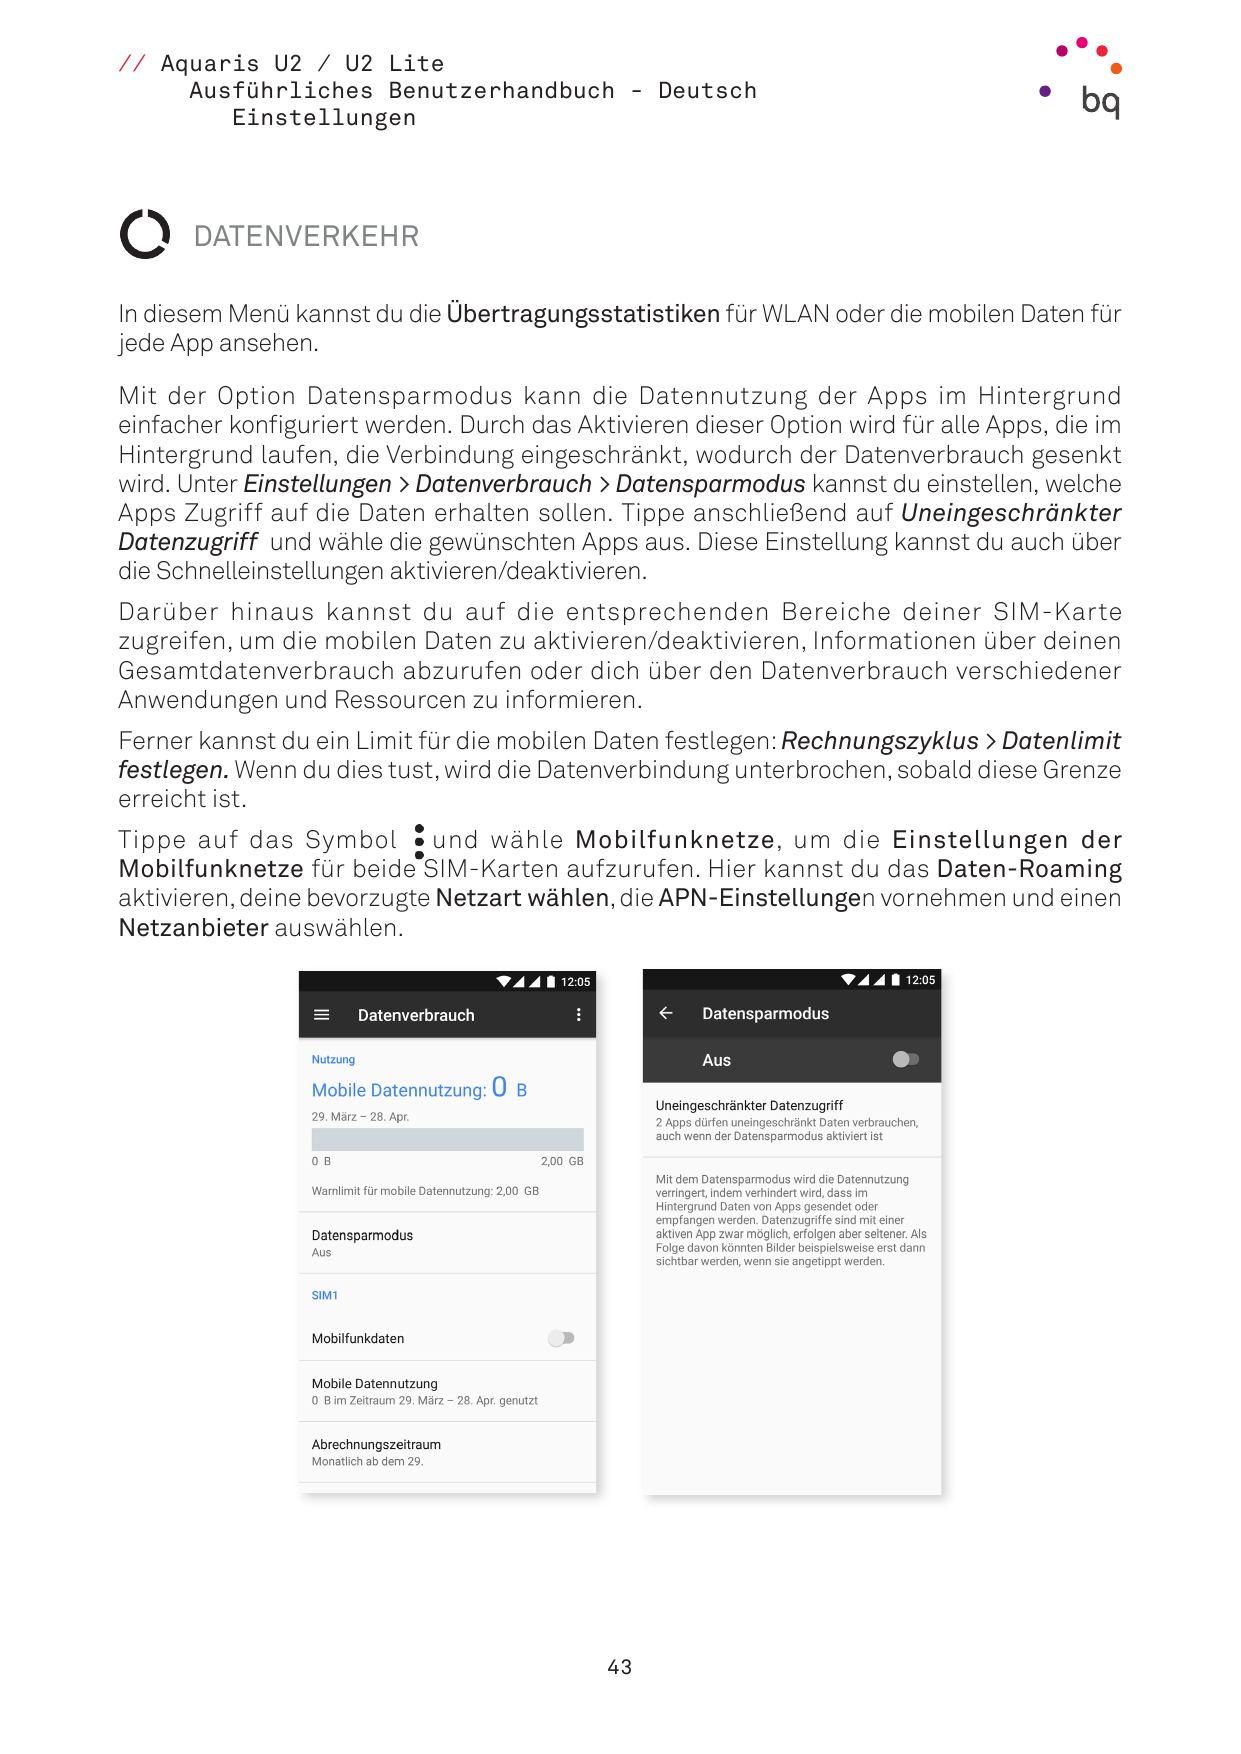 // Aquaris U2 / U2 LiteAusführliches Benutzerhandbuch - DeutschEinstellungenDATENVERKEHRIn diesem Menü kannst du die Übertragung